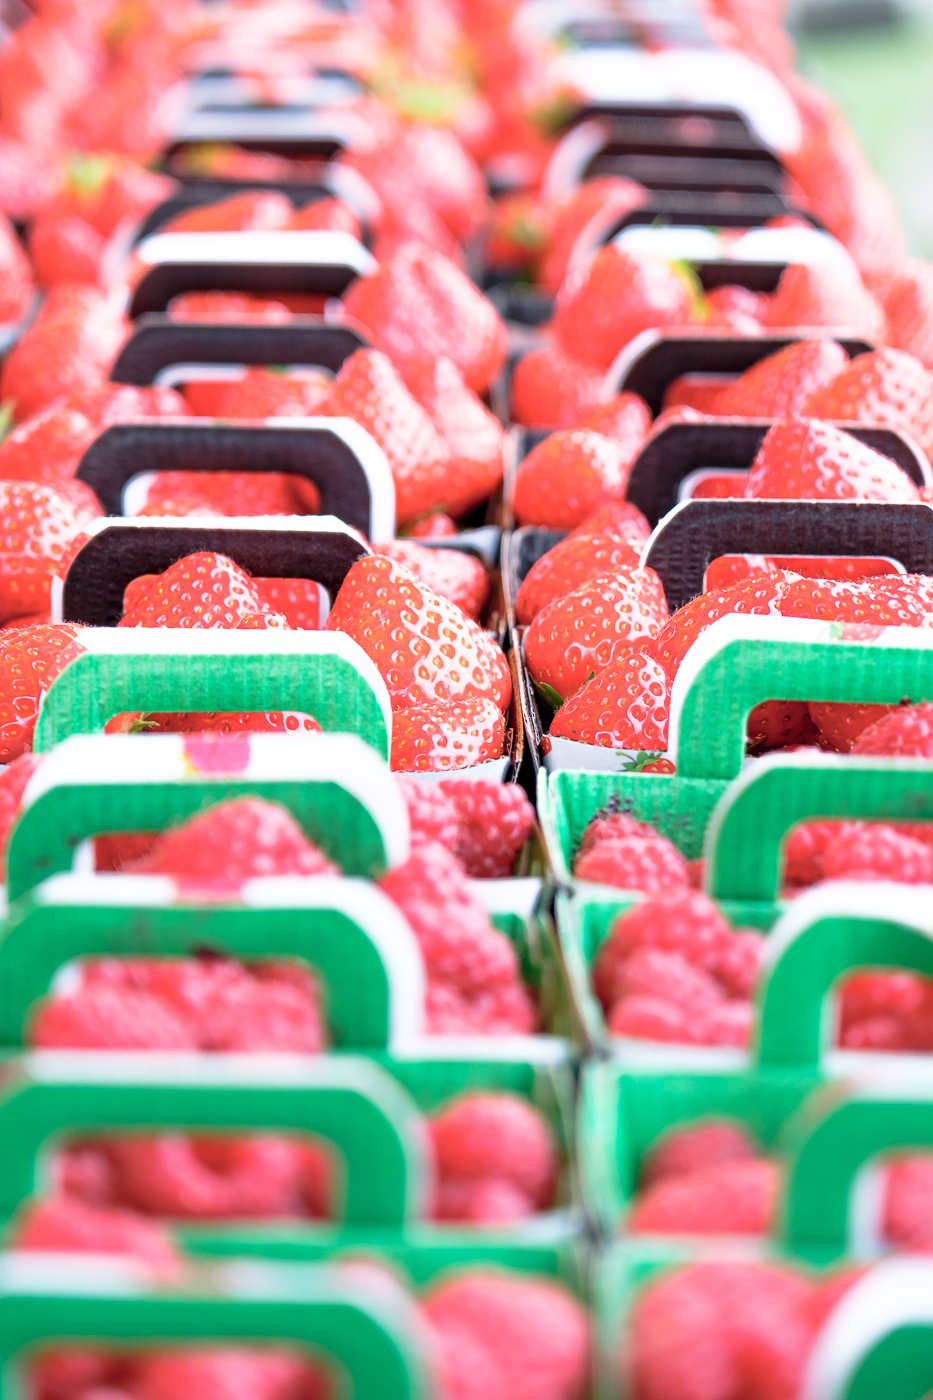 Nathalie Photographie professionnel marché producteur de fraises